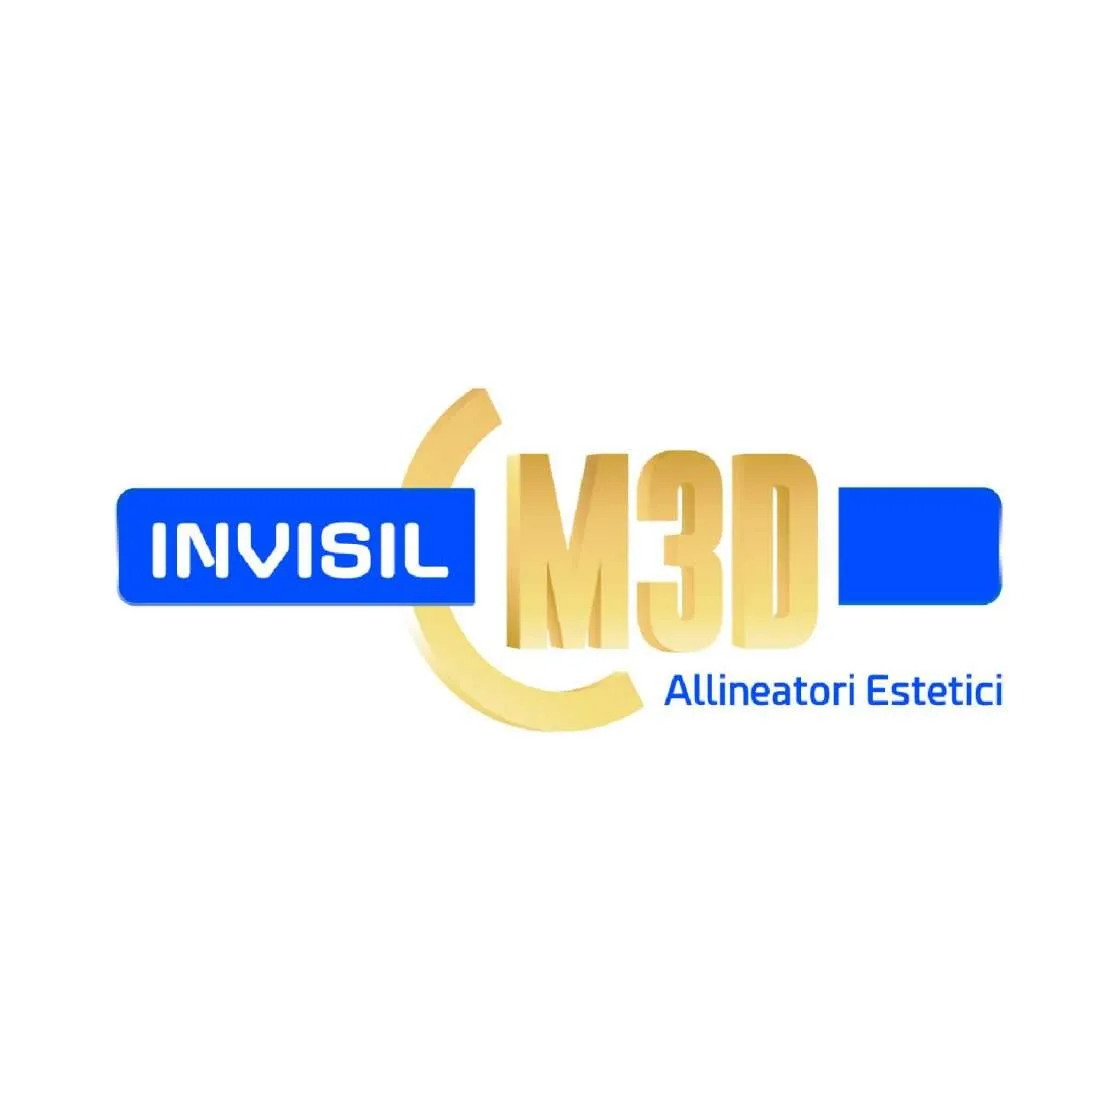 Invisil M3D allineatori estetici